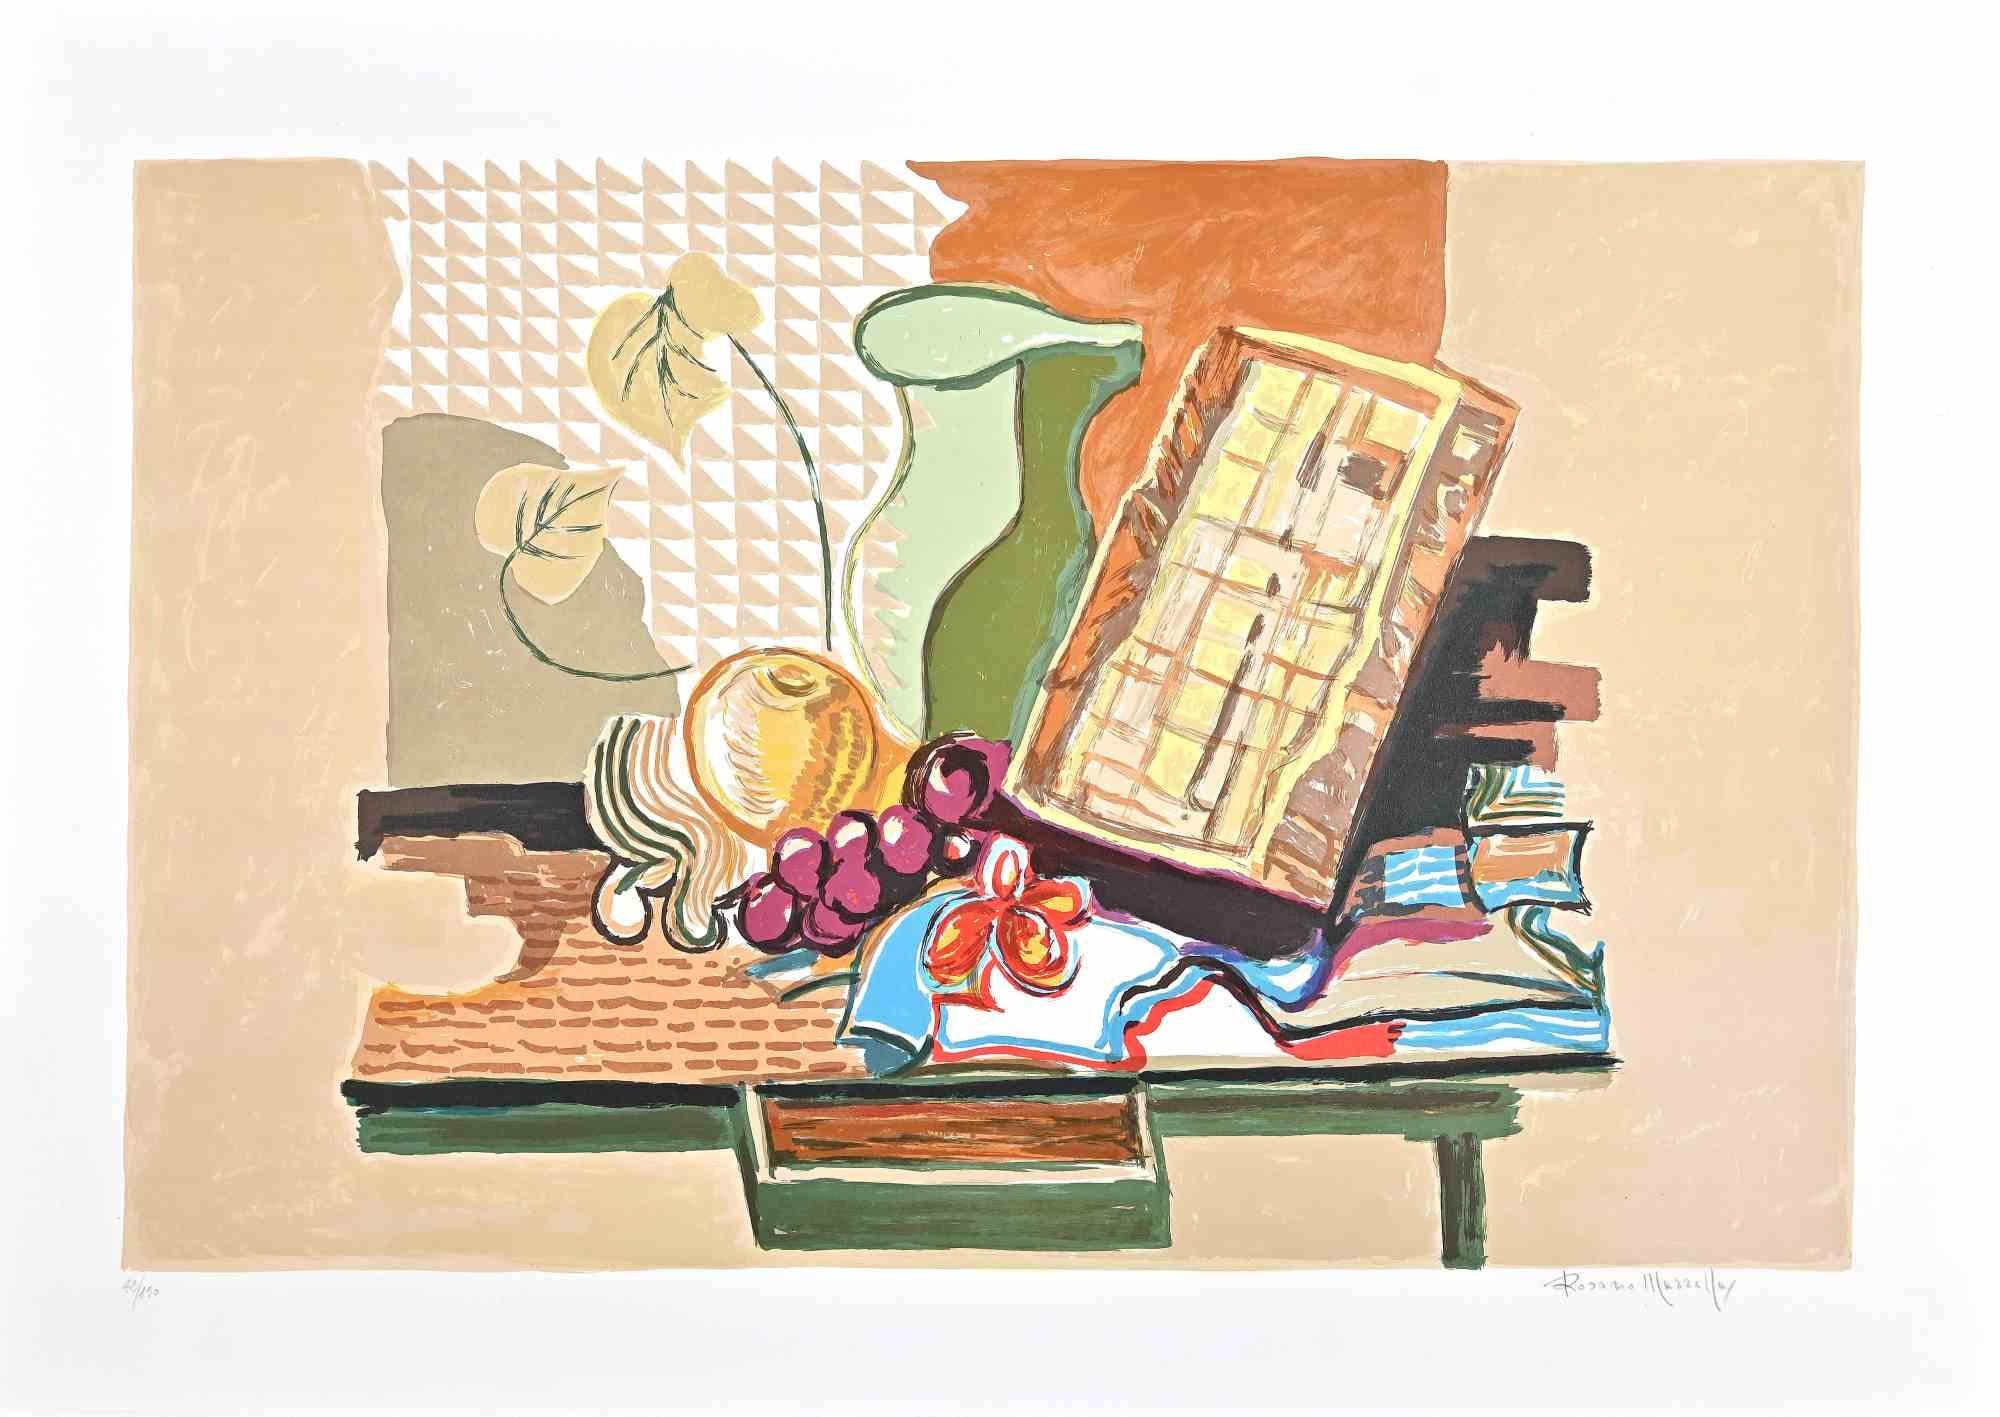 Still Life est une lithographie originale en couleur sur papier filigrané Fabriano réalisée par l'artiste italien Rosario Mazzella.

Représentant une nature morte automnale colorée, ce tirage original est signé à la main au crayon par l'artiste dans